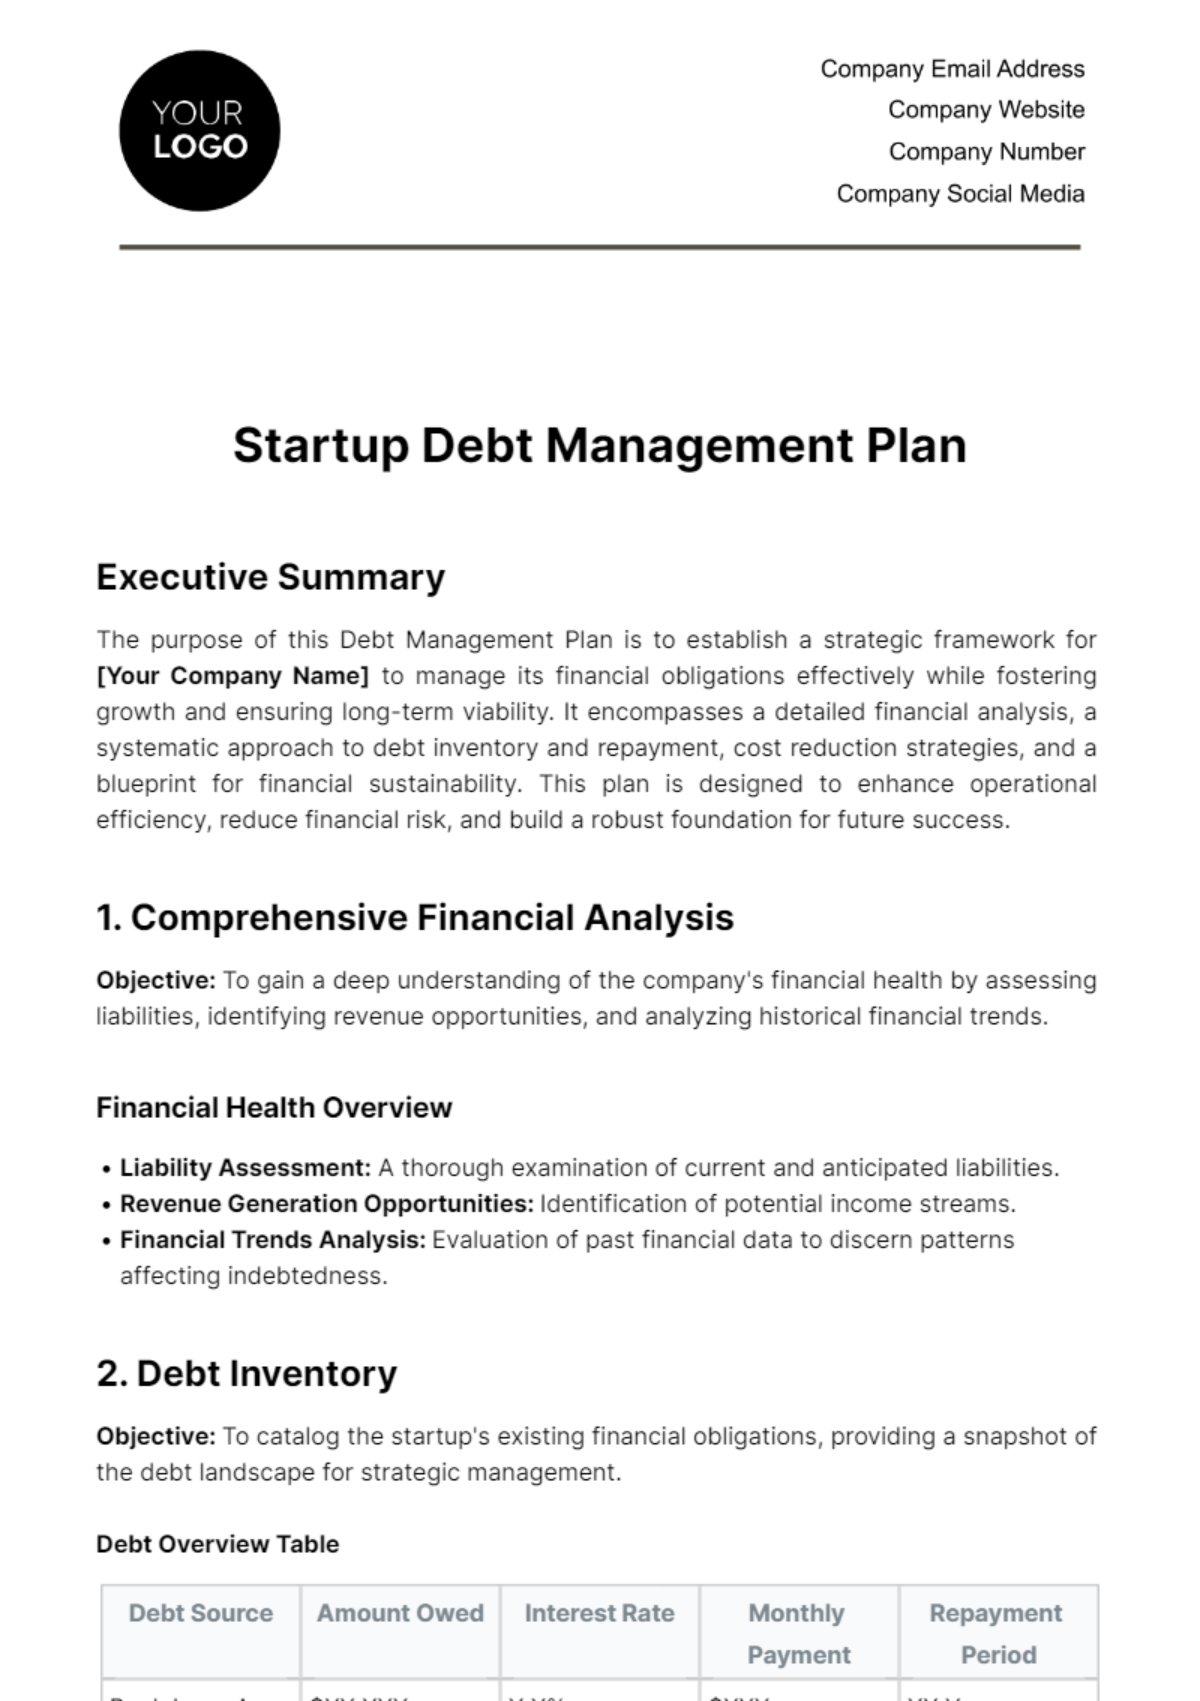 Startup Debt Management Plan Template